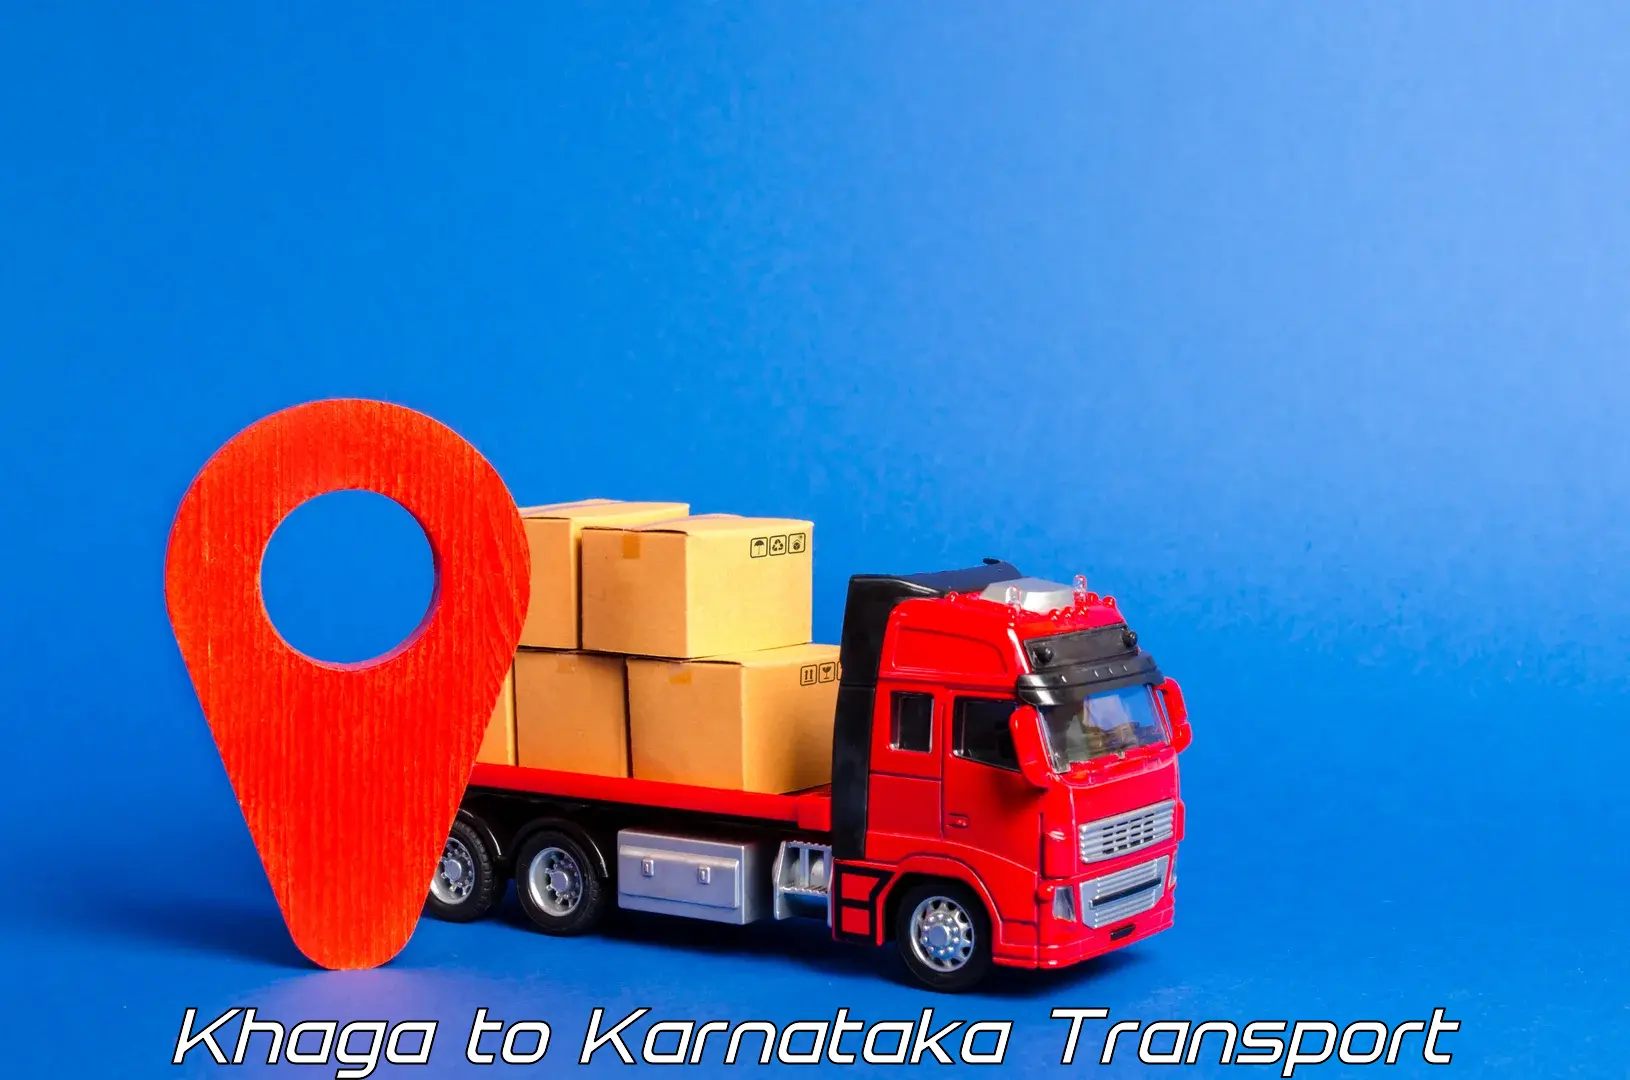 Transport in sharing in Khaga to Guledagudda